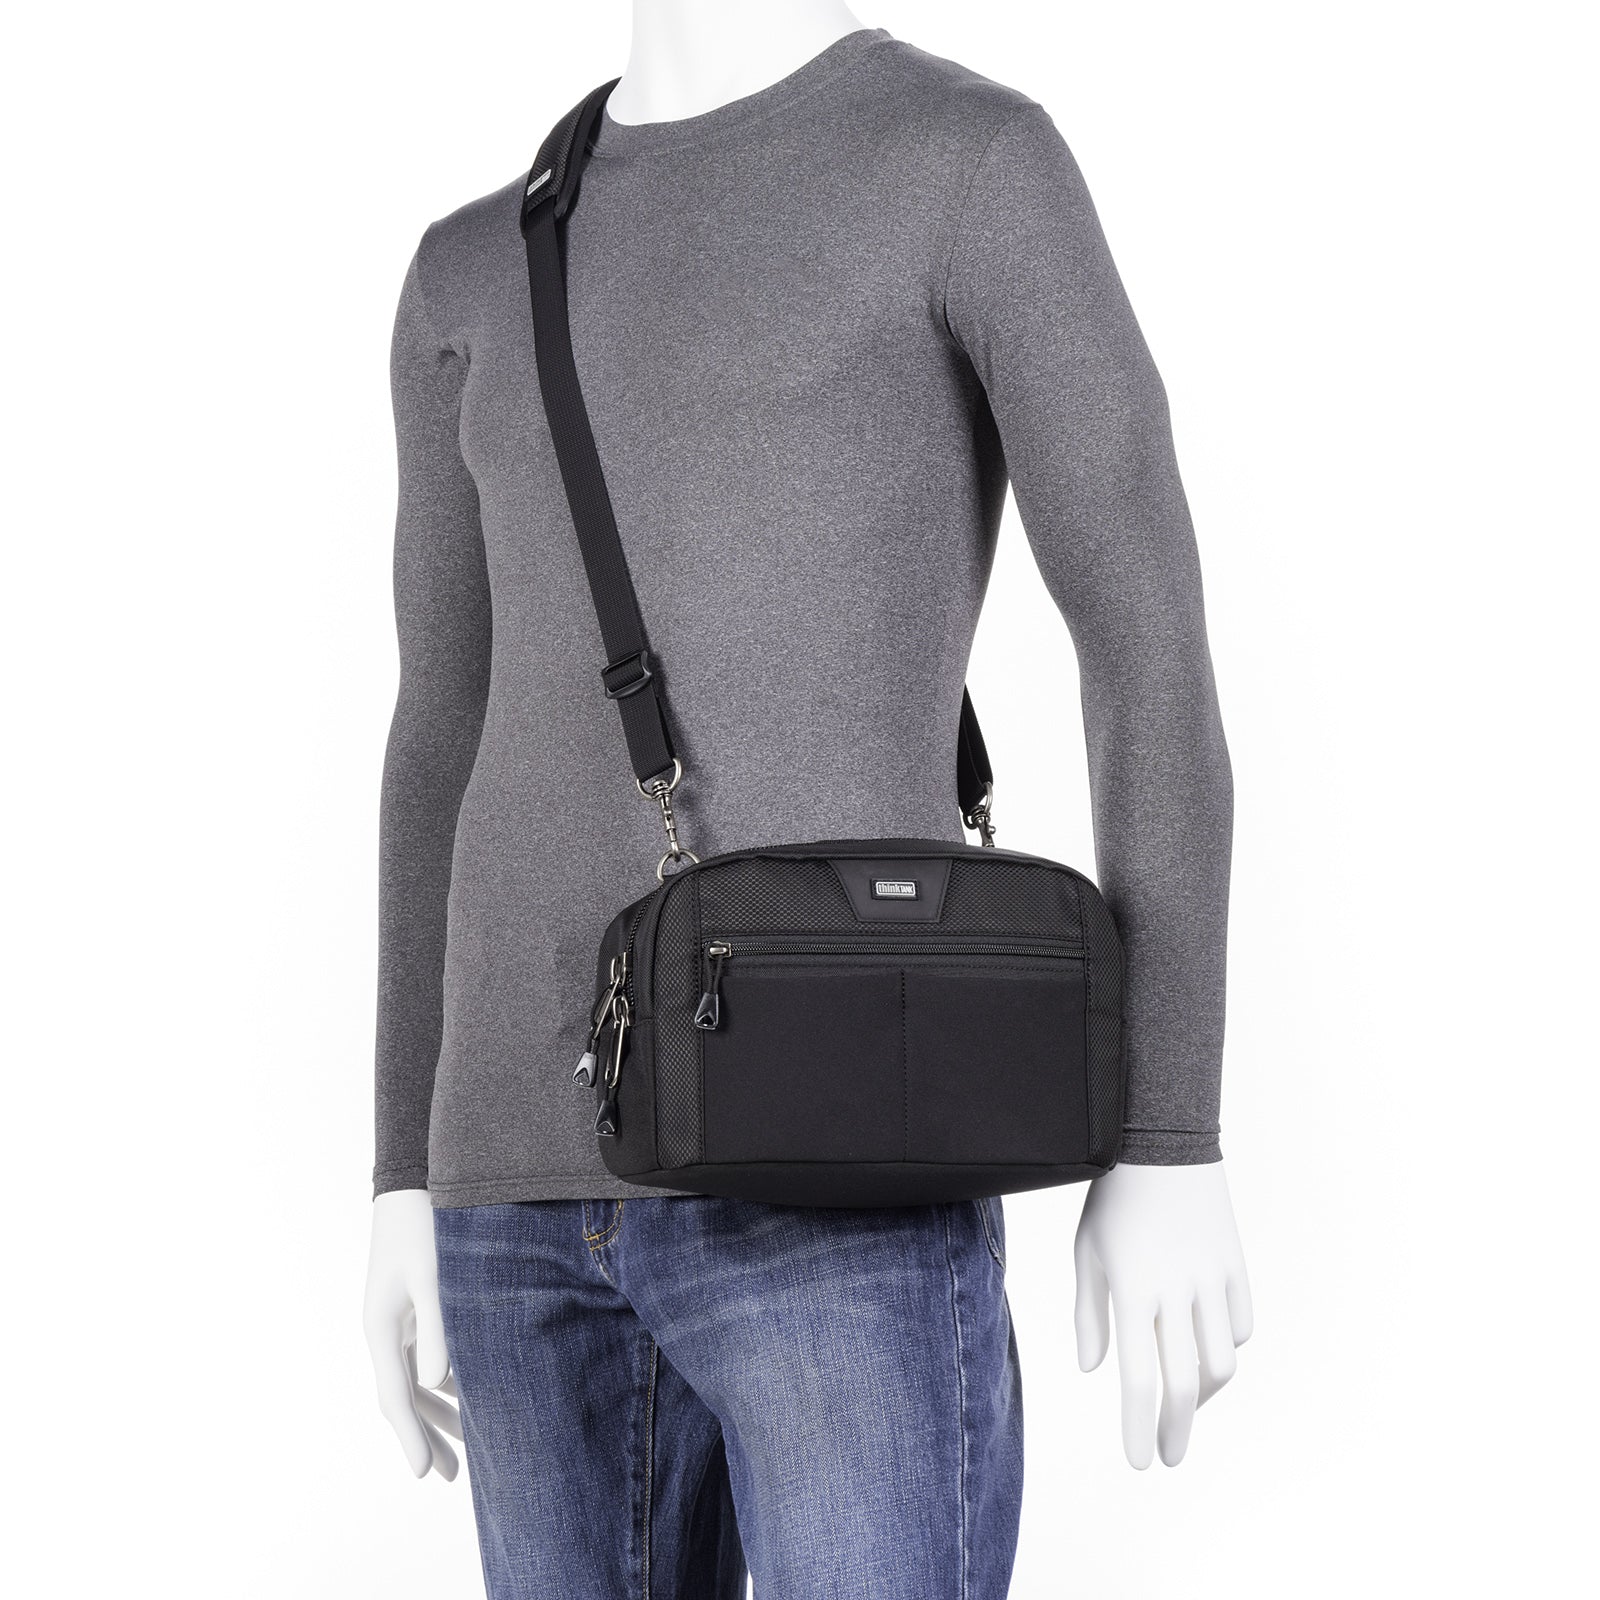 Multiple ways to carry — shoulder bag or belt mount